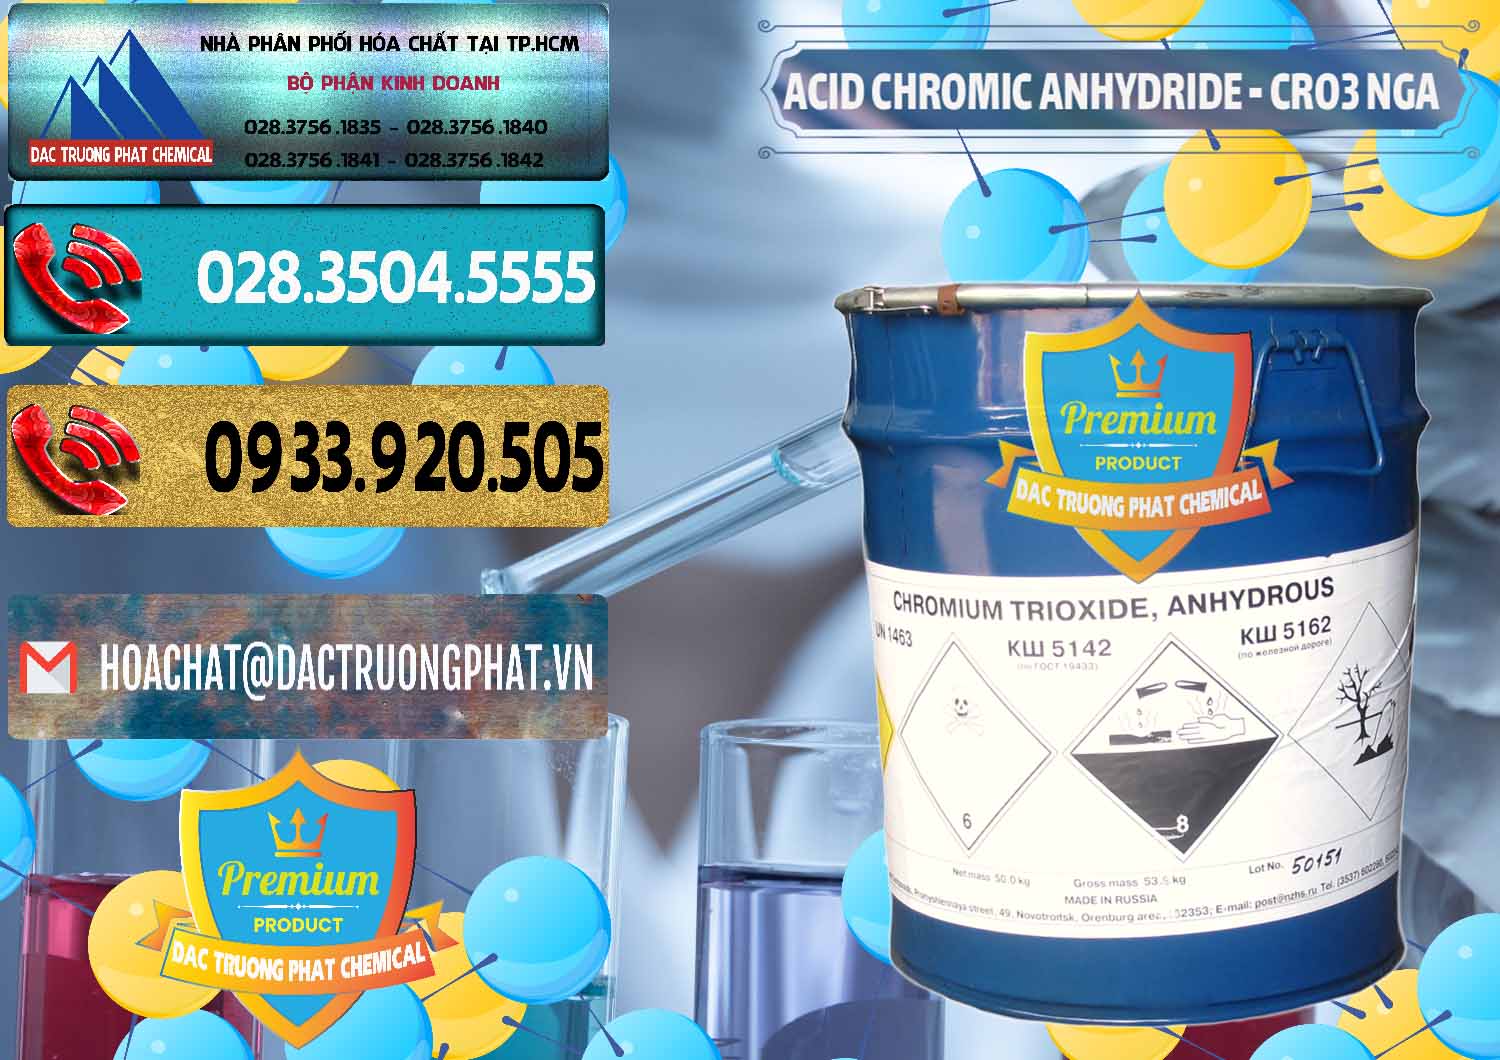 Kinh doanh _ bán Acid Chromic Anhydride - Cromic CRO3 Nga Russia - 0006 - Đơn vị chuyên phân phối - cung ứng hóa chất tại TP.HCM - hoachatdetnhuom.com